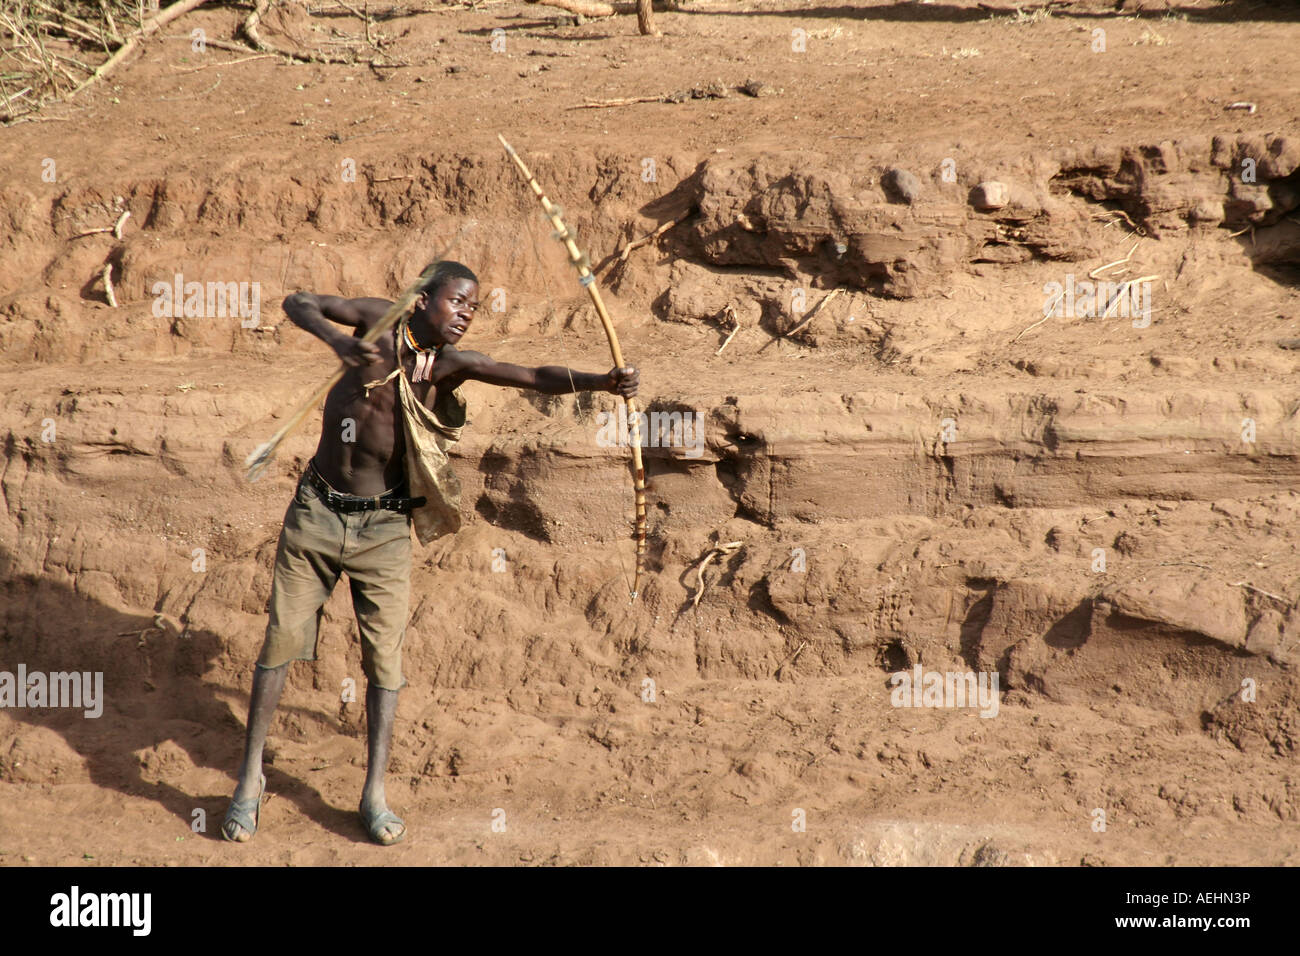 Chasseur de chasseurs-cueilleurs tribu Hadza la chasse avec arc et flèche près du lac Eyasi en Tanzanie Afrique de l'Est Banque D'Images